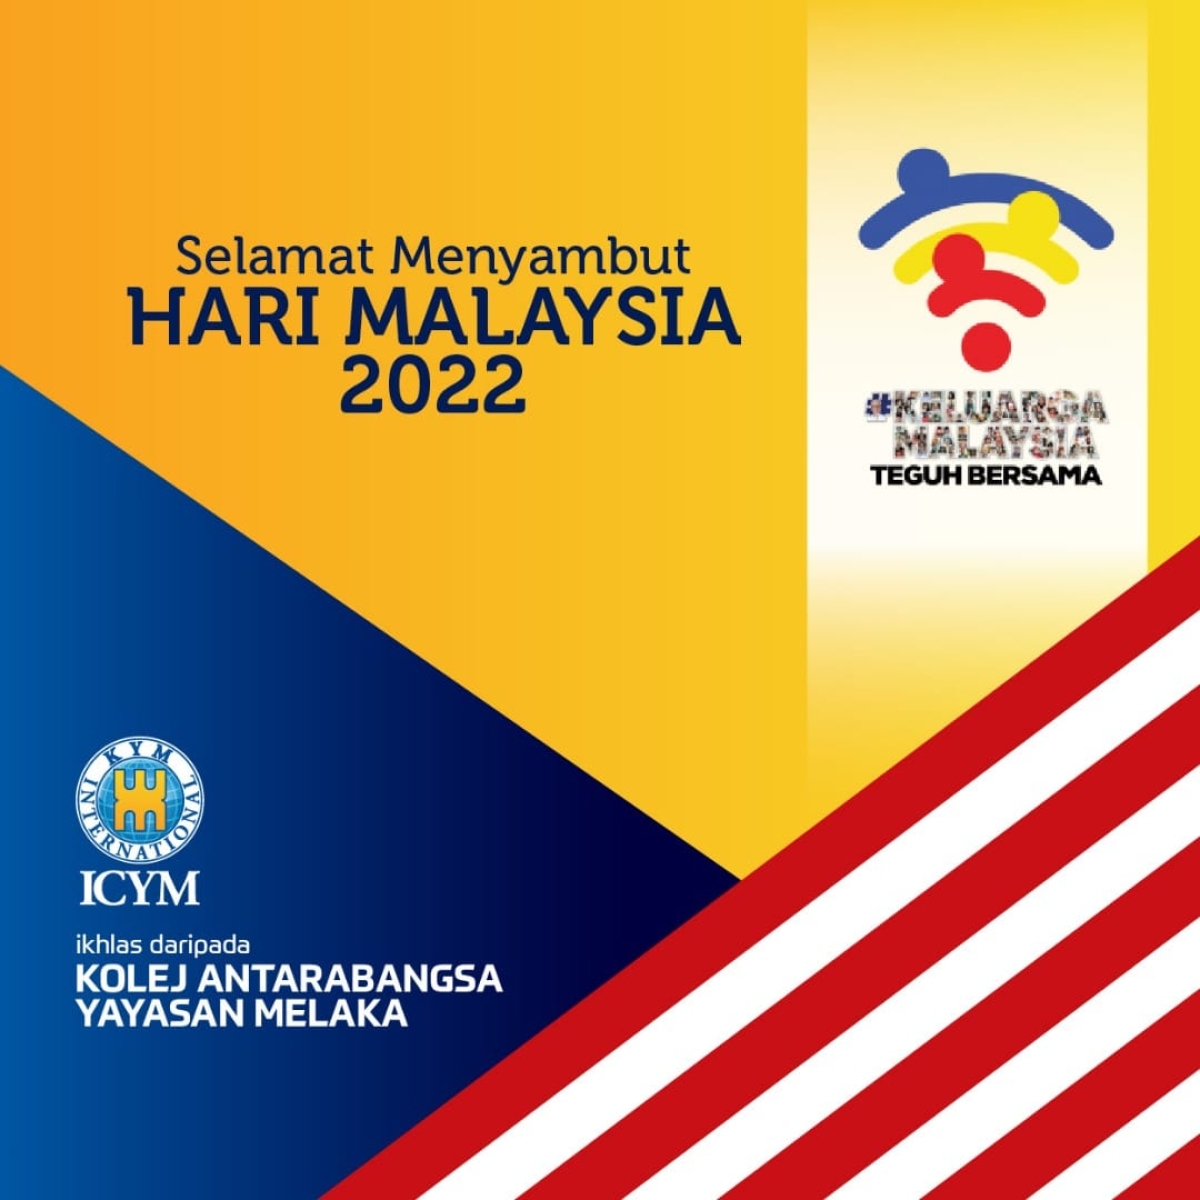 SELAMAT MENYAMBUT HARI MALAYSIA 2022